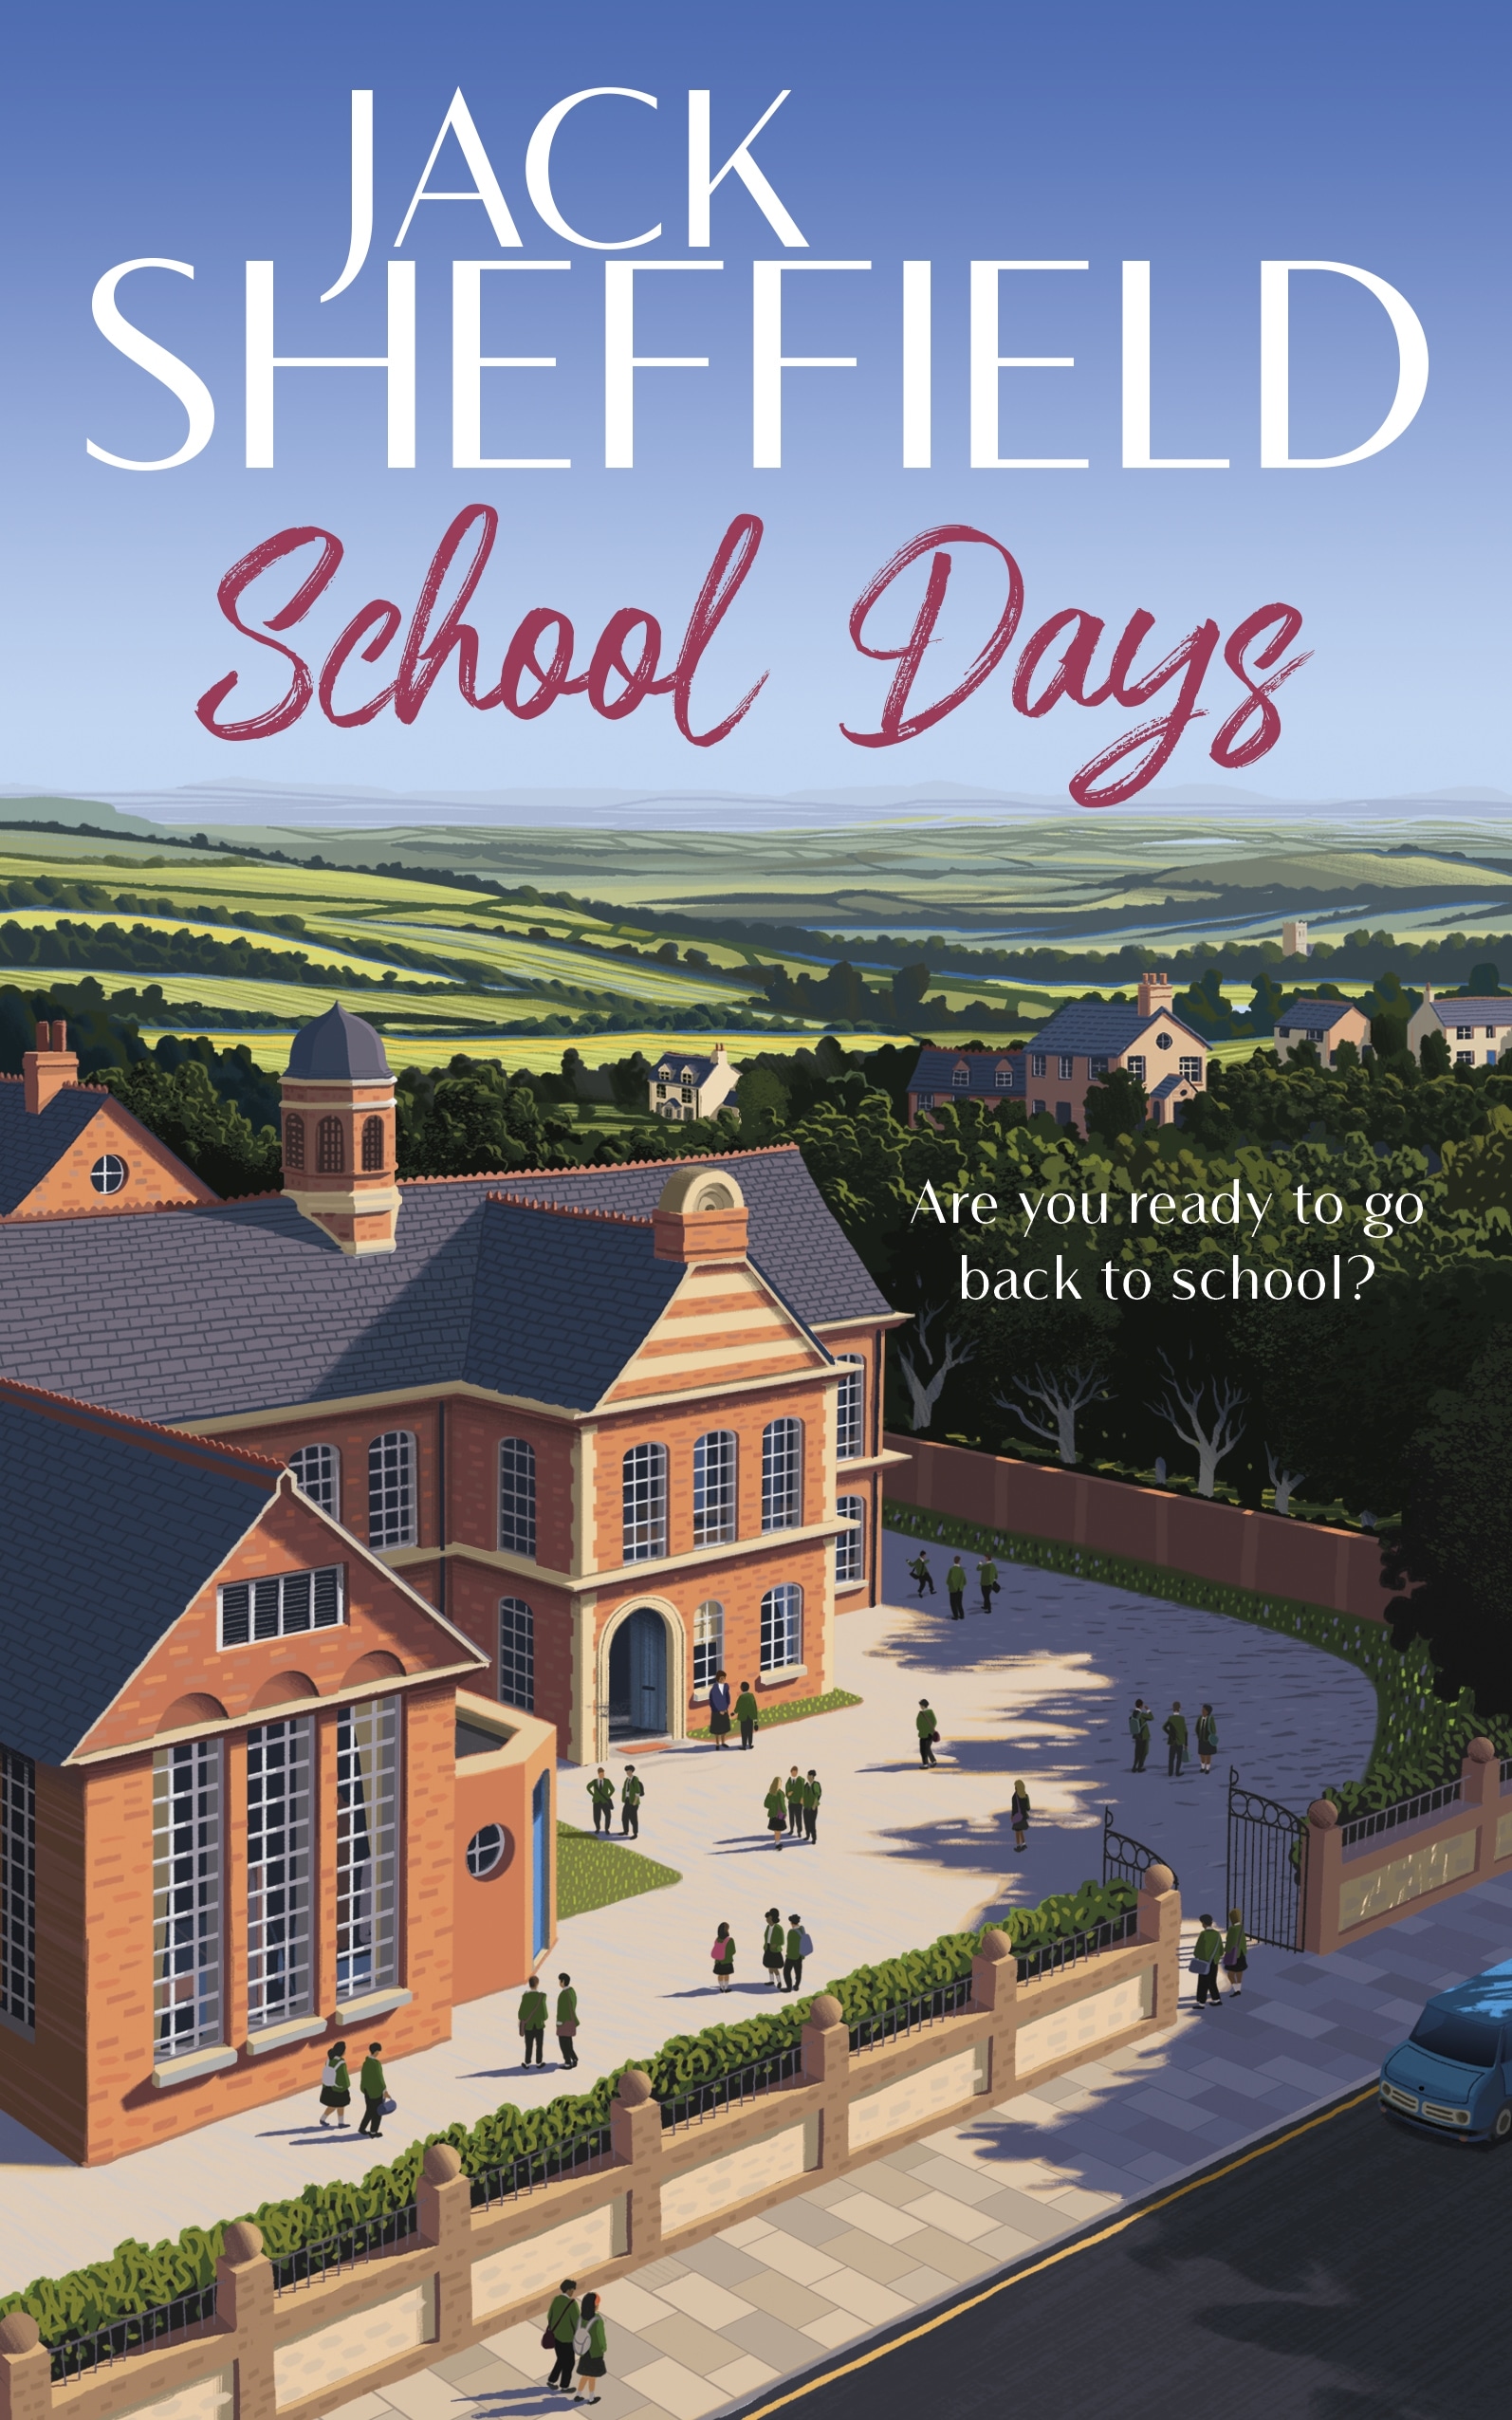 Book “School Days” by Jack Sheffield — September 9, 2021